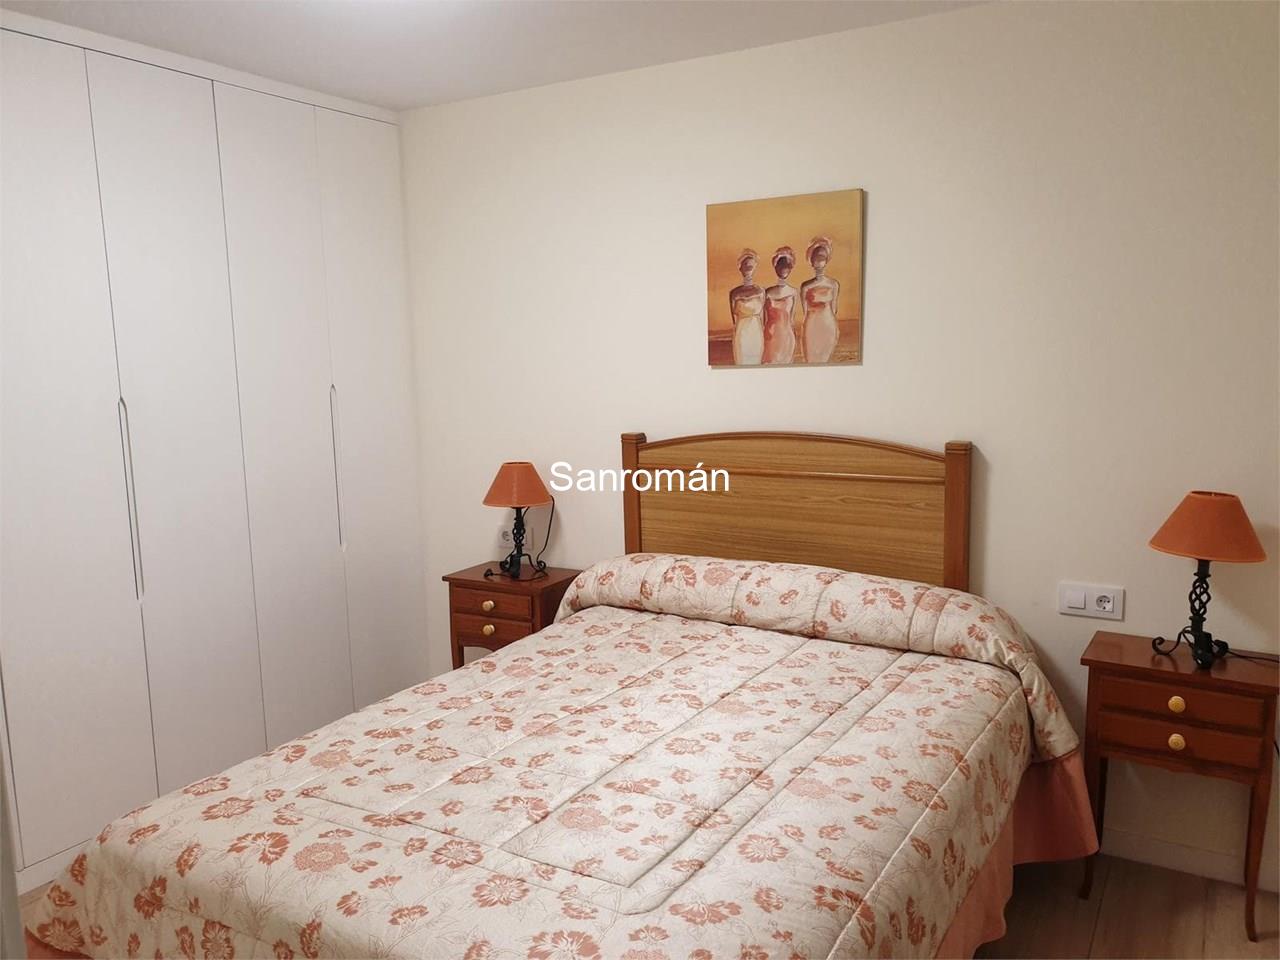 Foto 6 Apartamento de 2 dormitorios en Playa América - Nigrán. Alquiler temporada Septiembre/Junio.